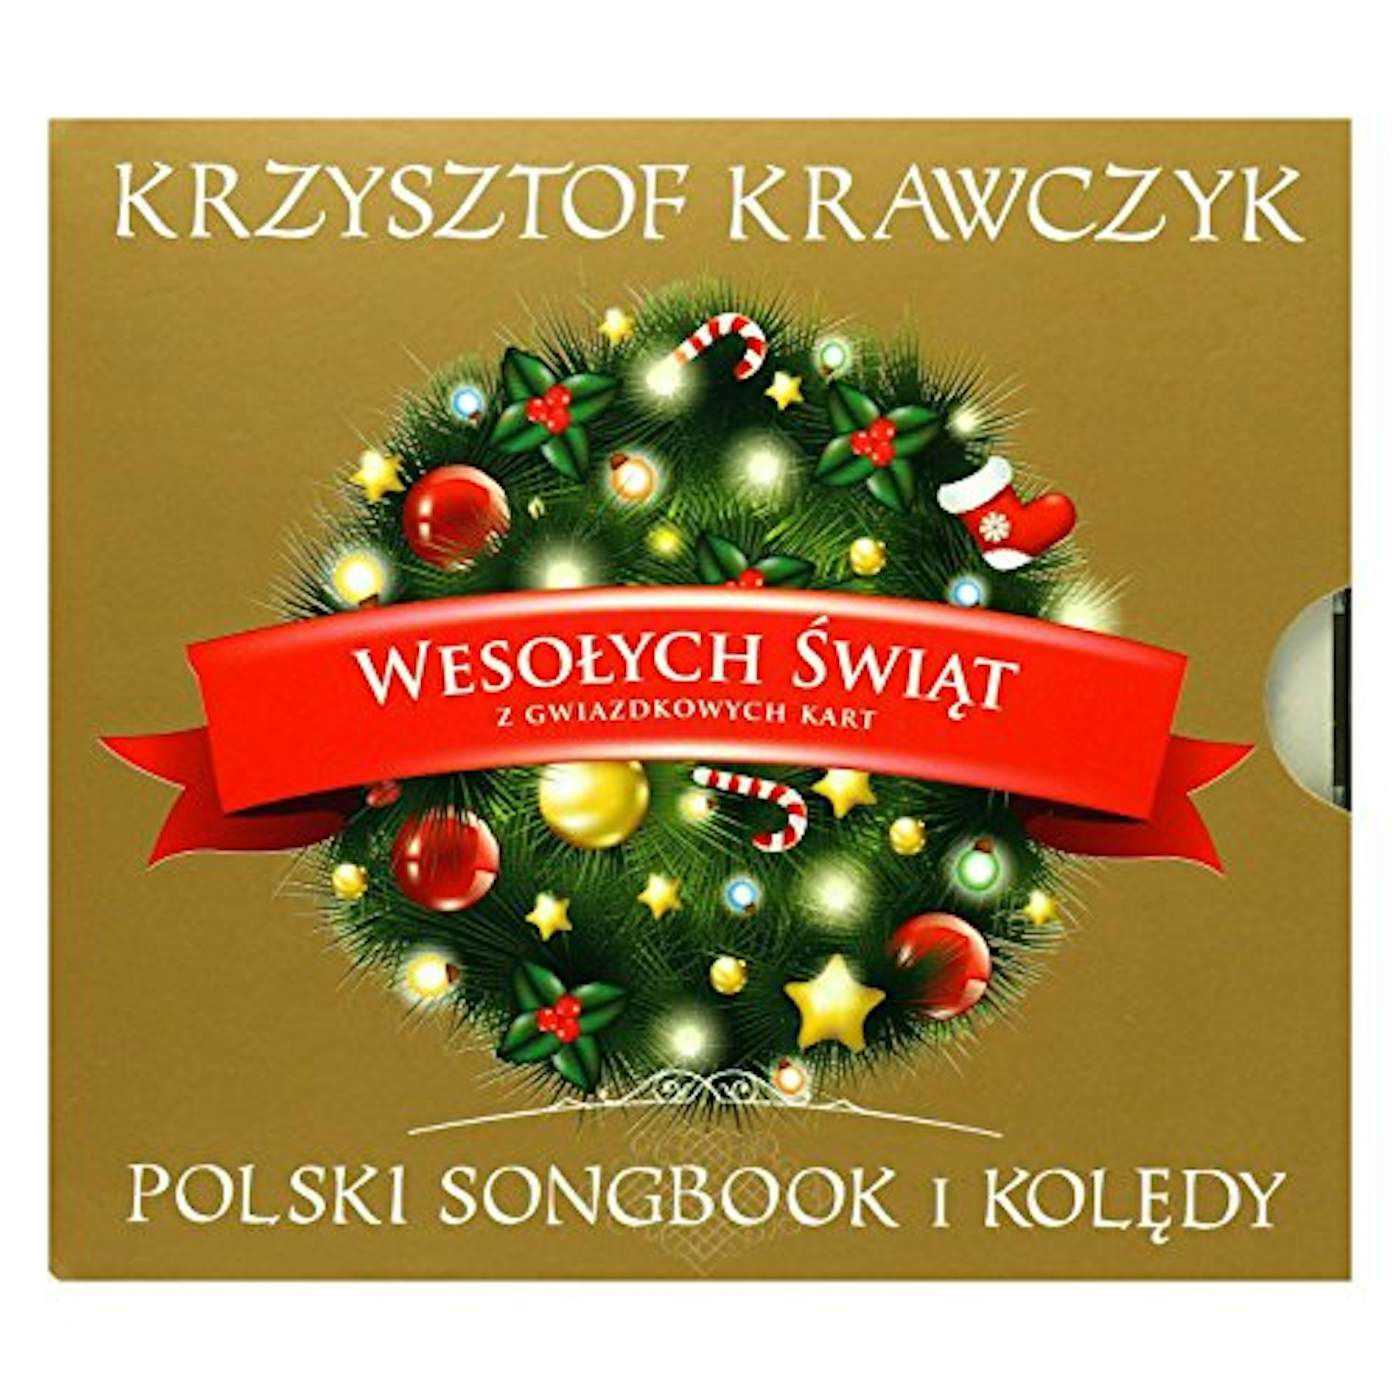 Krzysztof Krawczyk WESOLYCH SWIAT Z GWIAZDKOWYCH KART CD